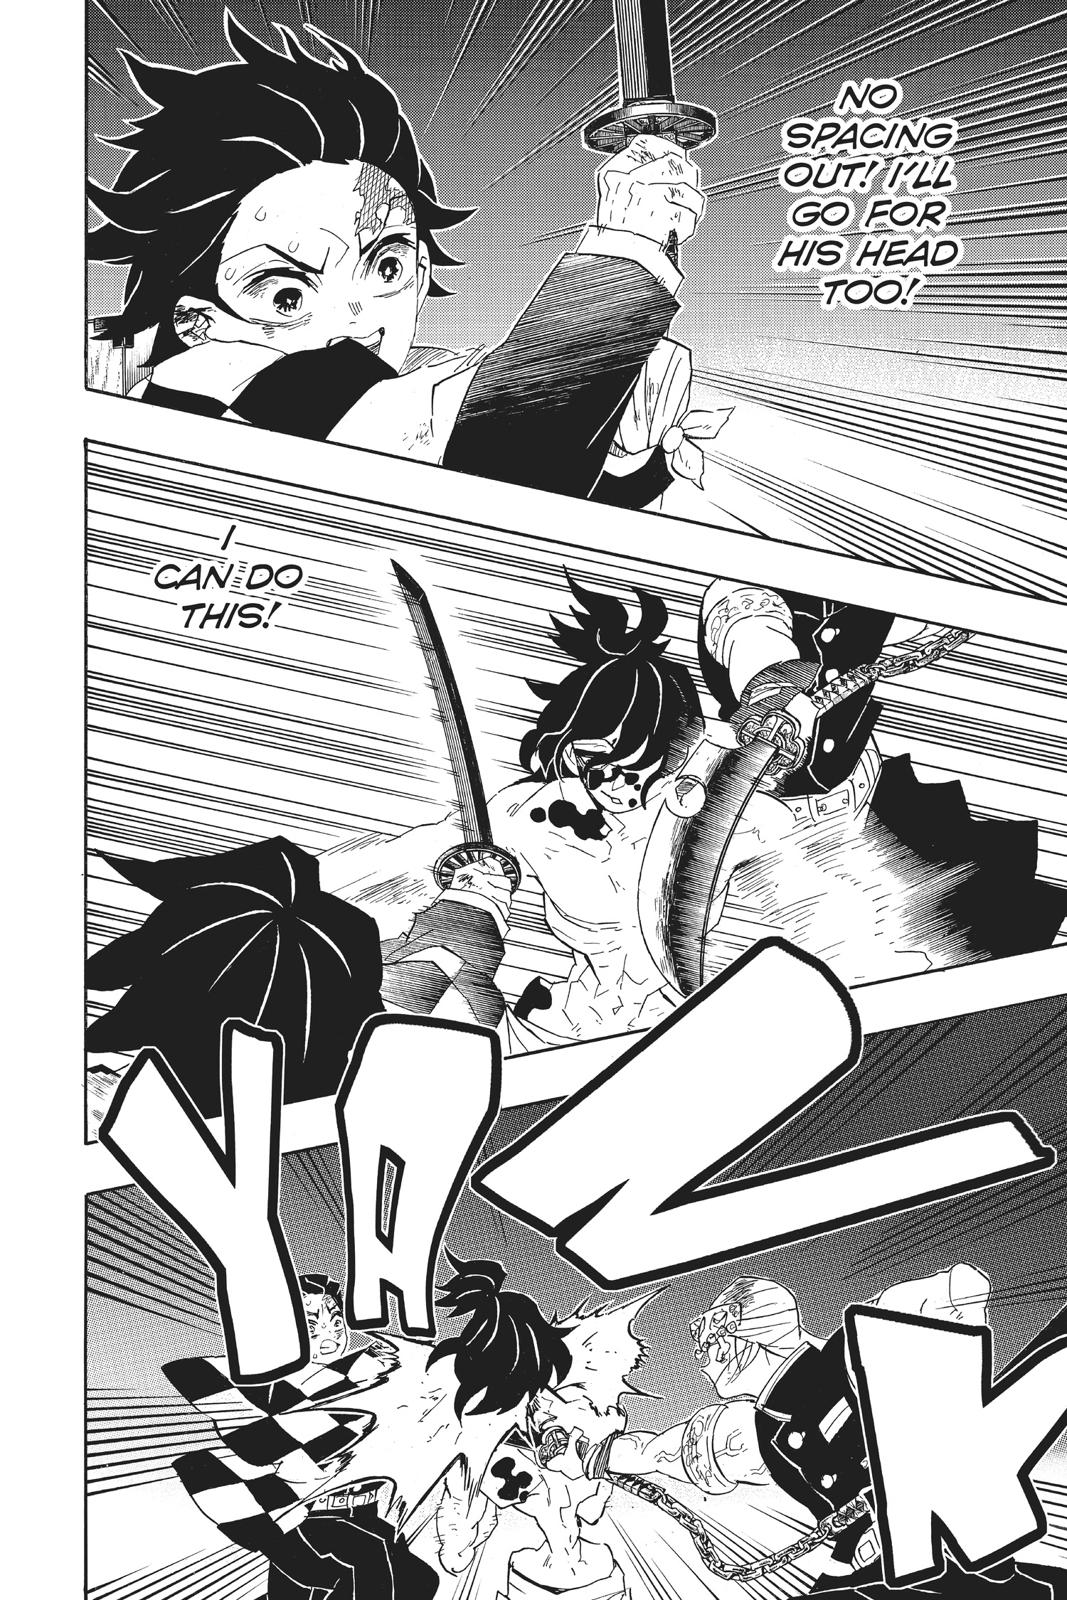 Demon Slayer Manga Manga Chapter - 91 - image 4